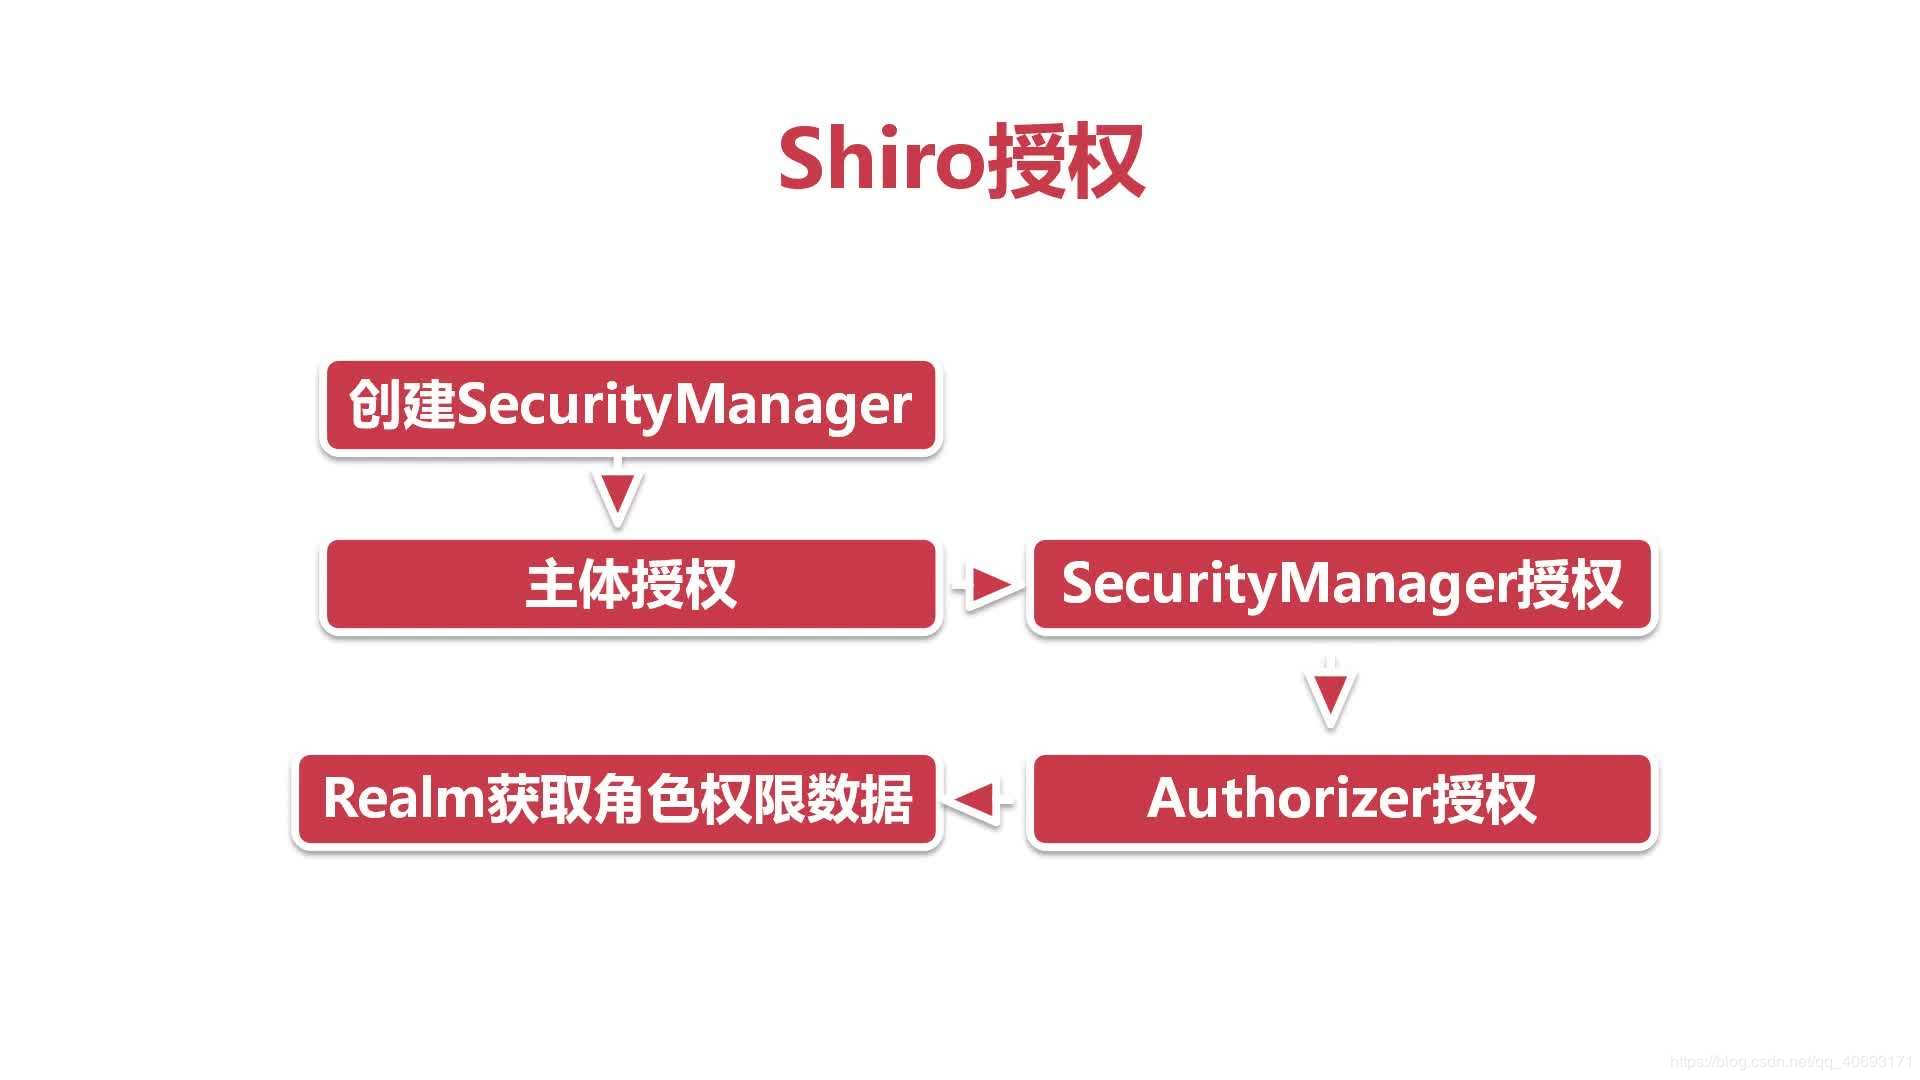 Springboot整合shiro基于url身份认证和授权认证